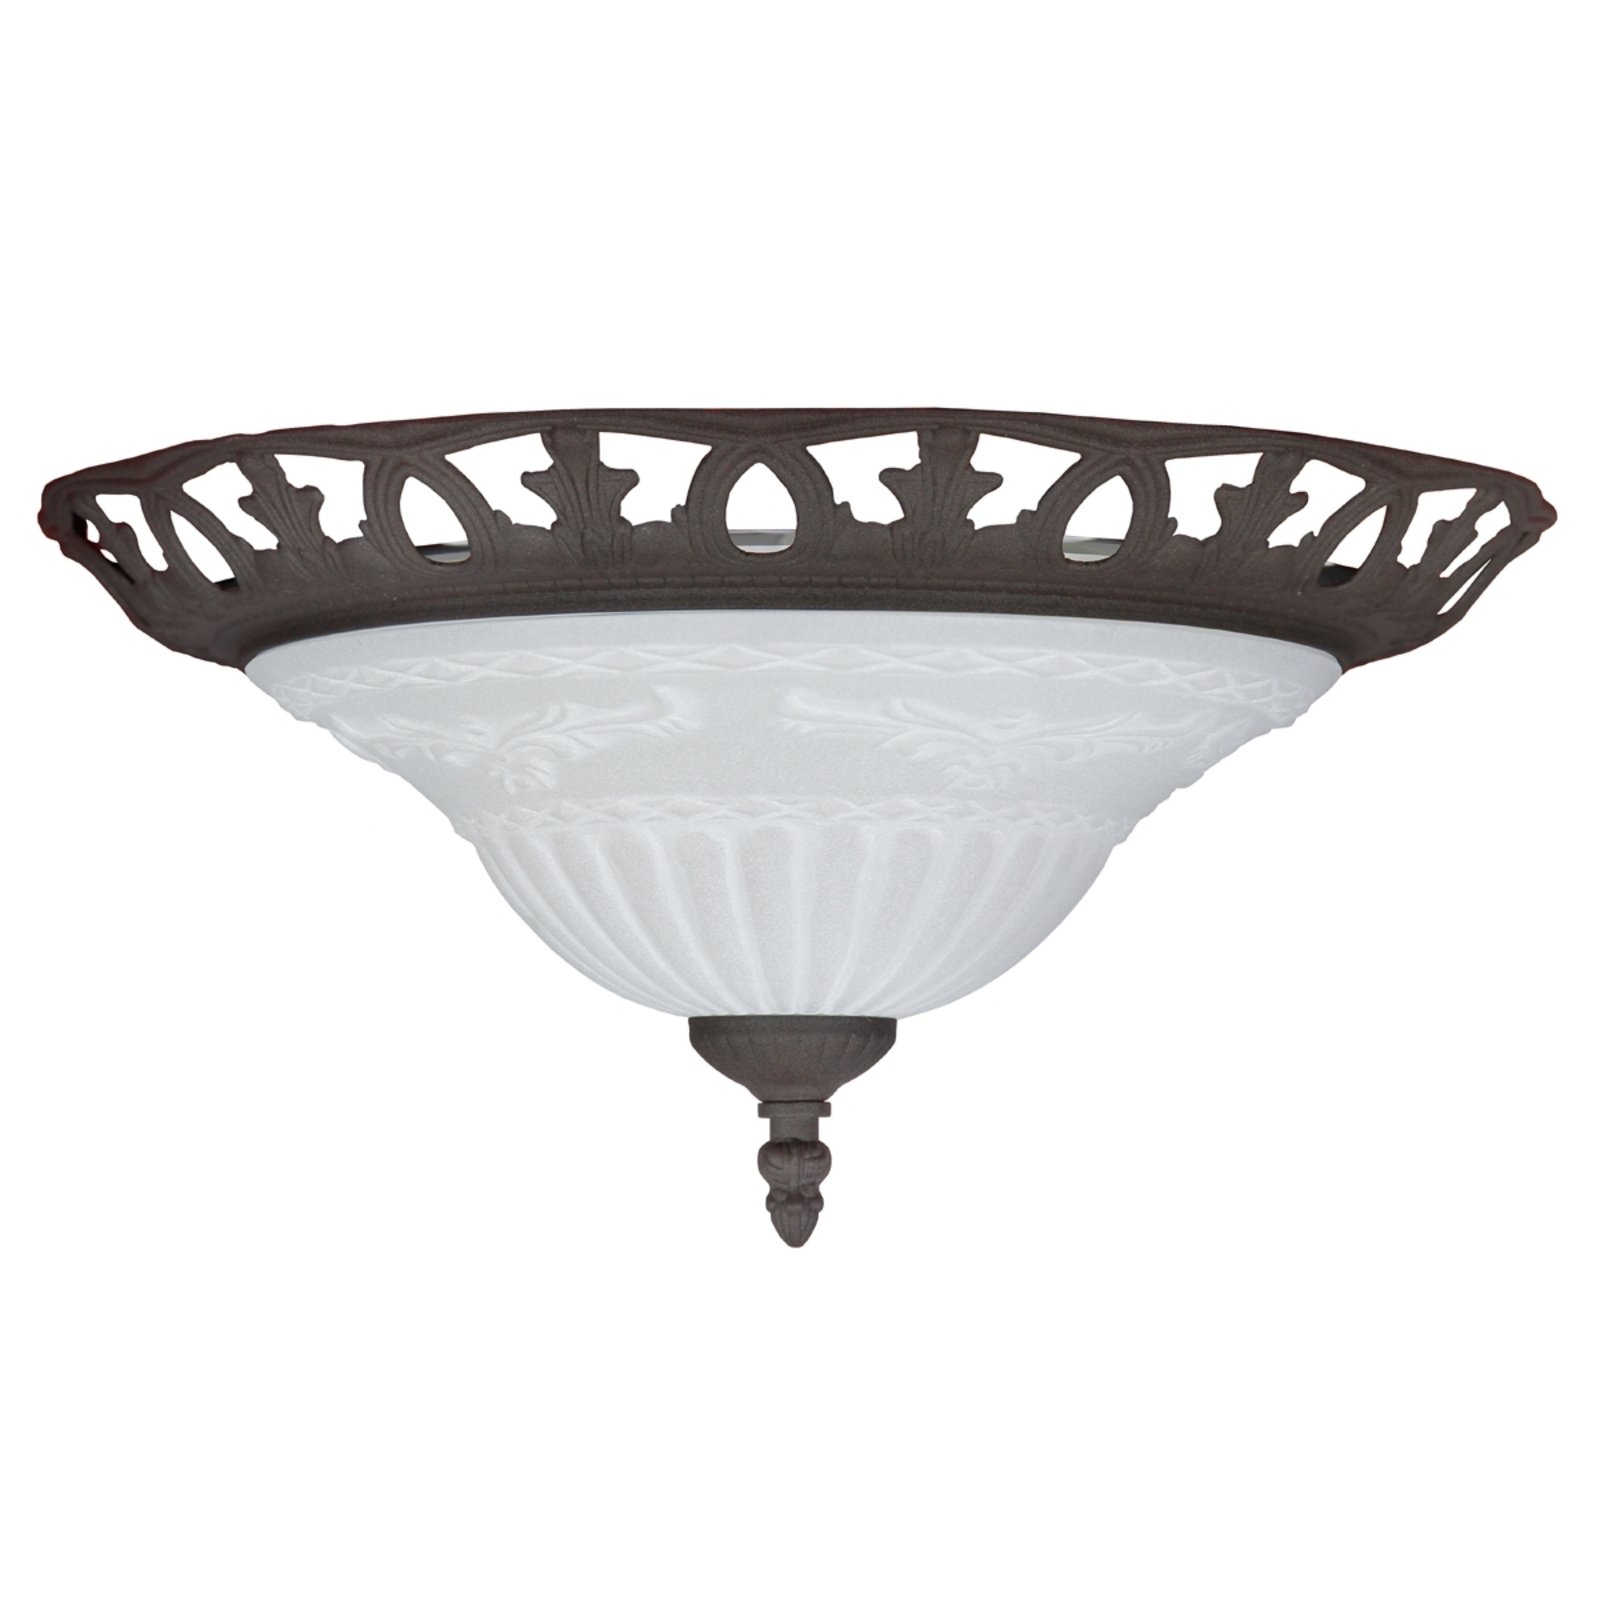 Ръждива таванна лампа с античен дизайн